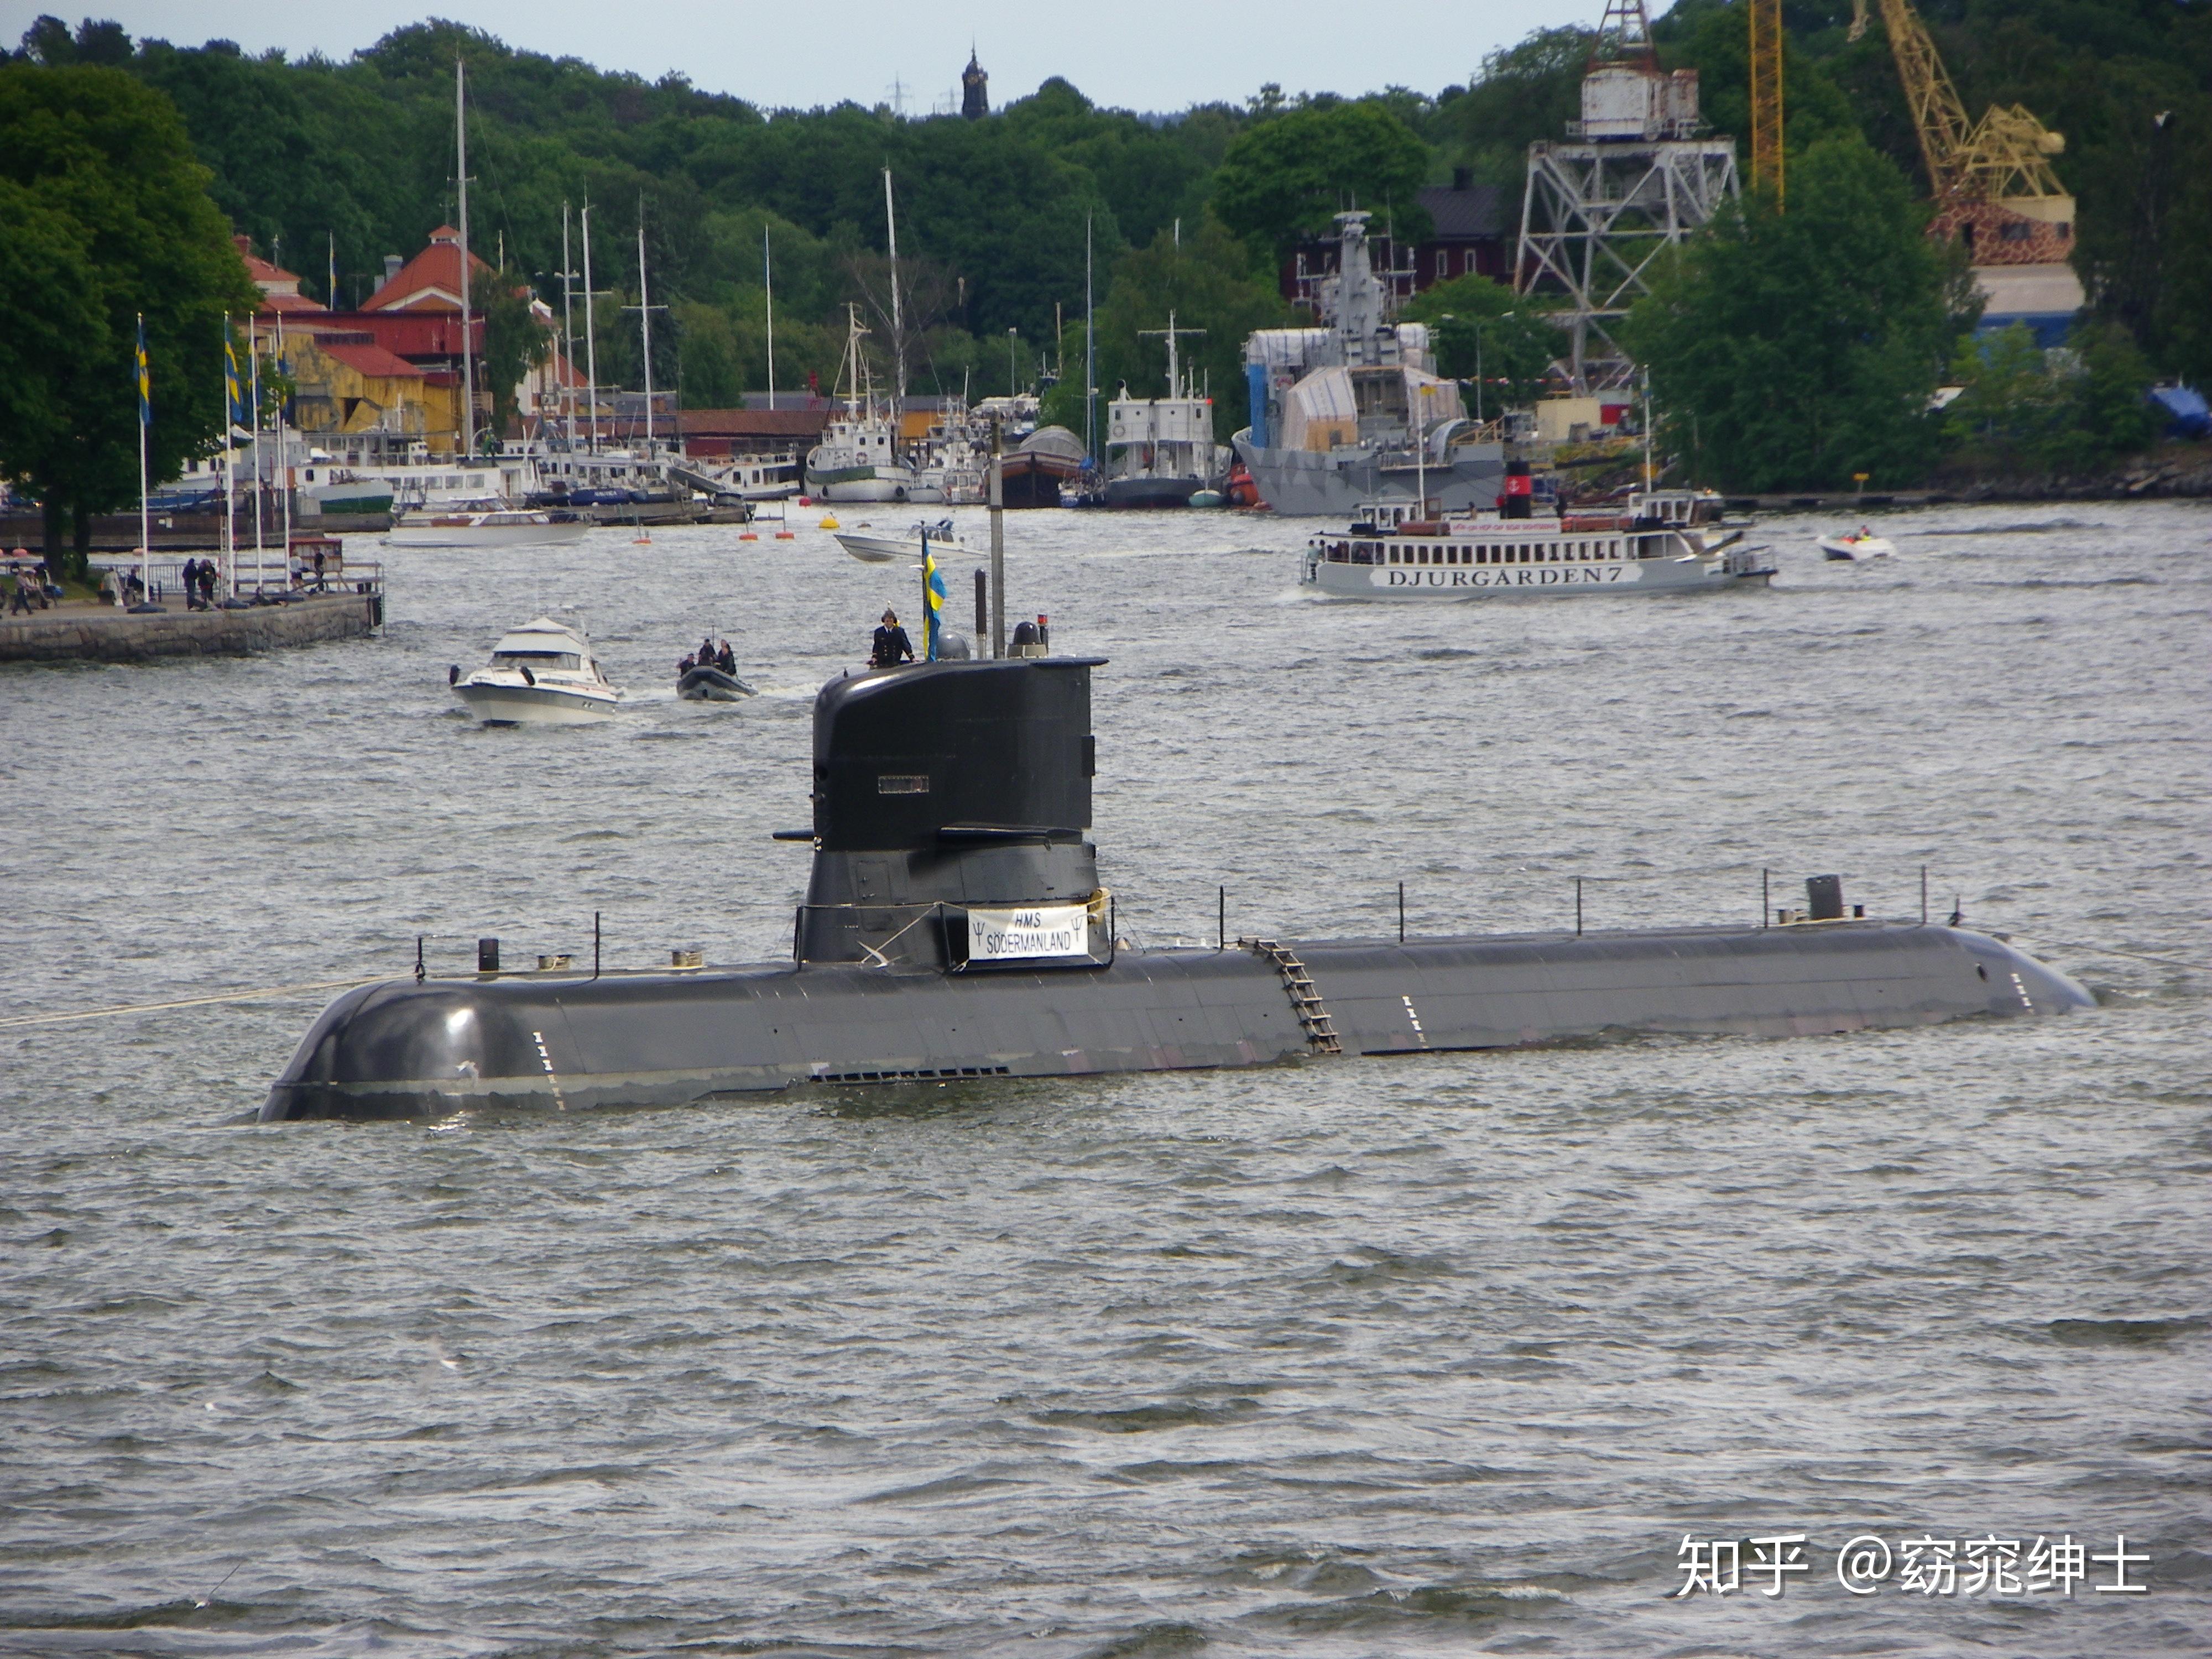 目前下辖两艘南曼兰级常规潜艇和三艘哥特兰级常规潜艇